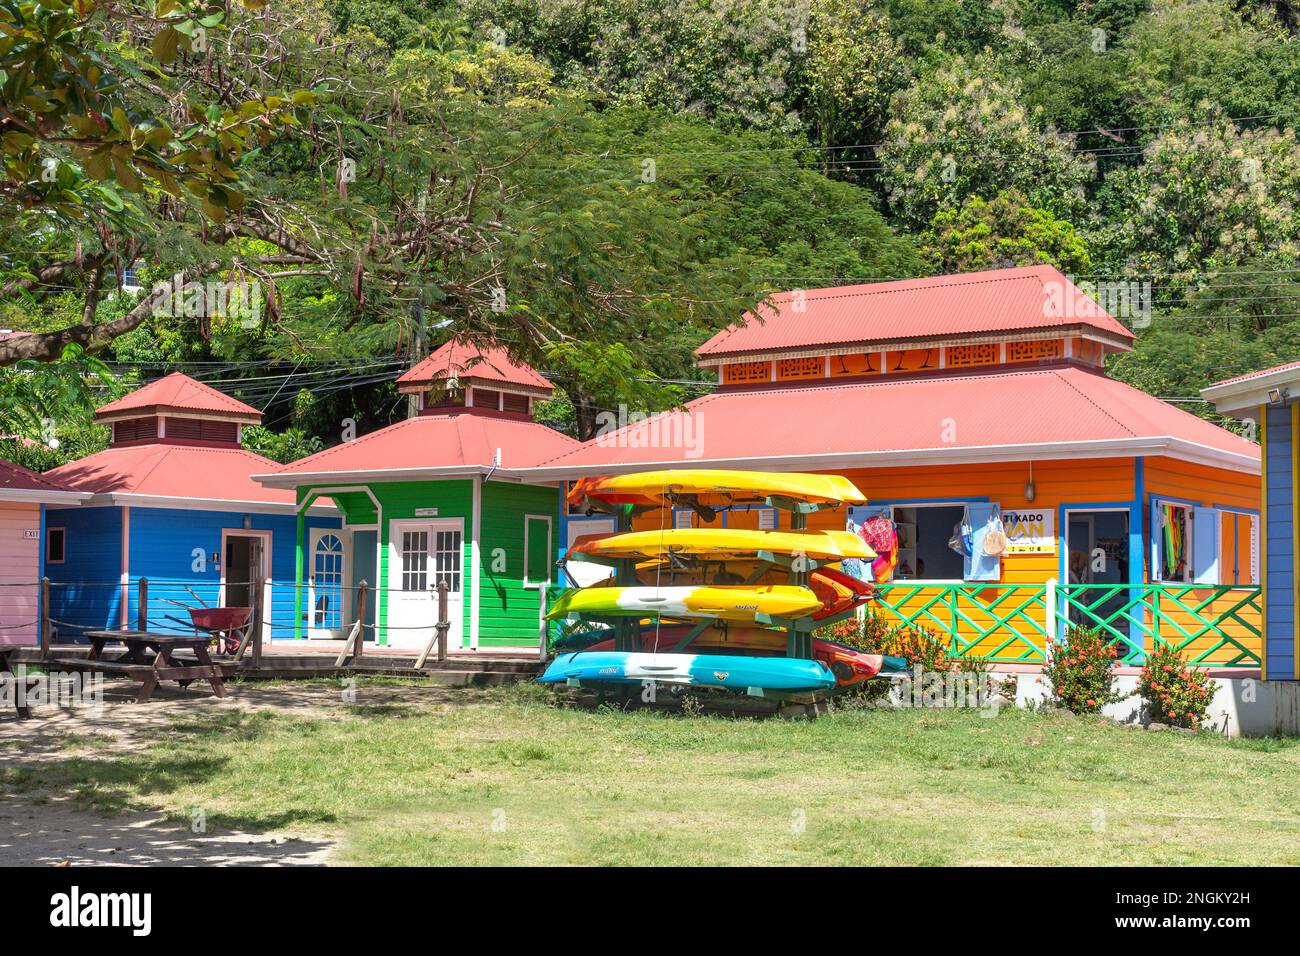 Des bâtiments commerciaux et des kayaks colorés au Parc de la Plage de Soufrière, Soufrière, quartier de la Soufrière, Sainte-Lucie, Petites Antilles, Caraïbes Banque D'Images